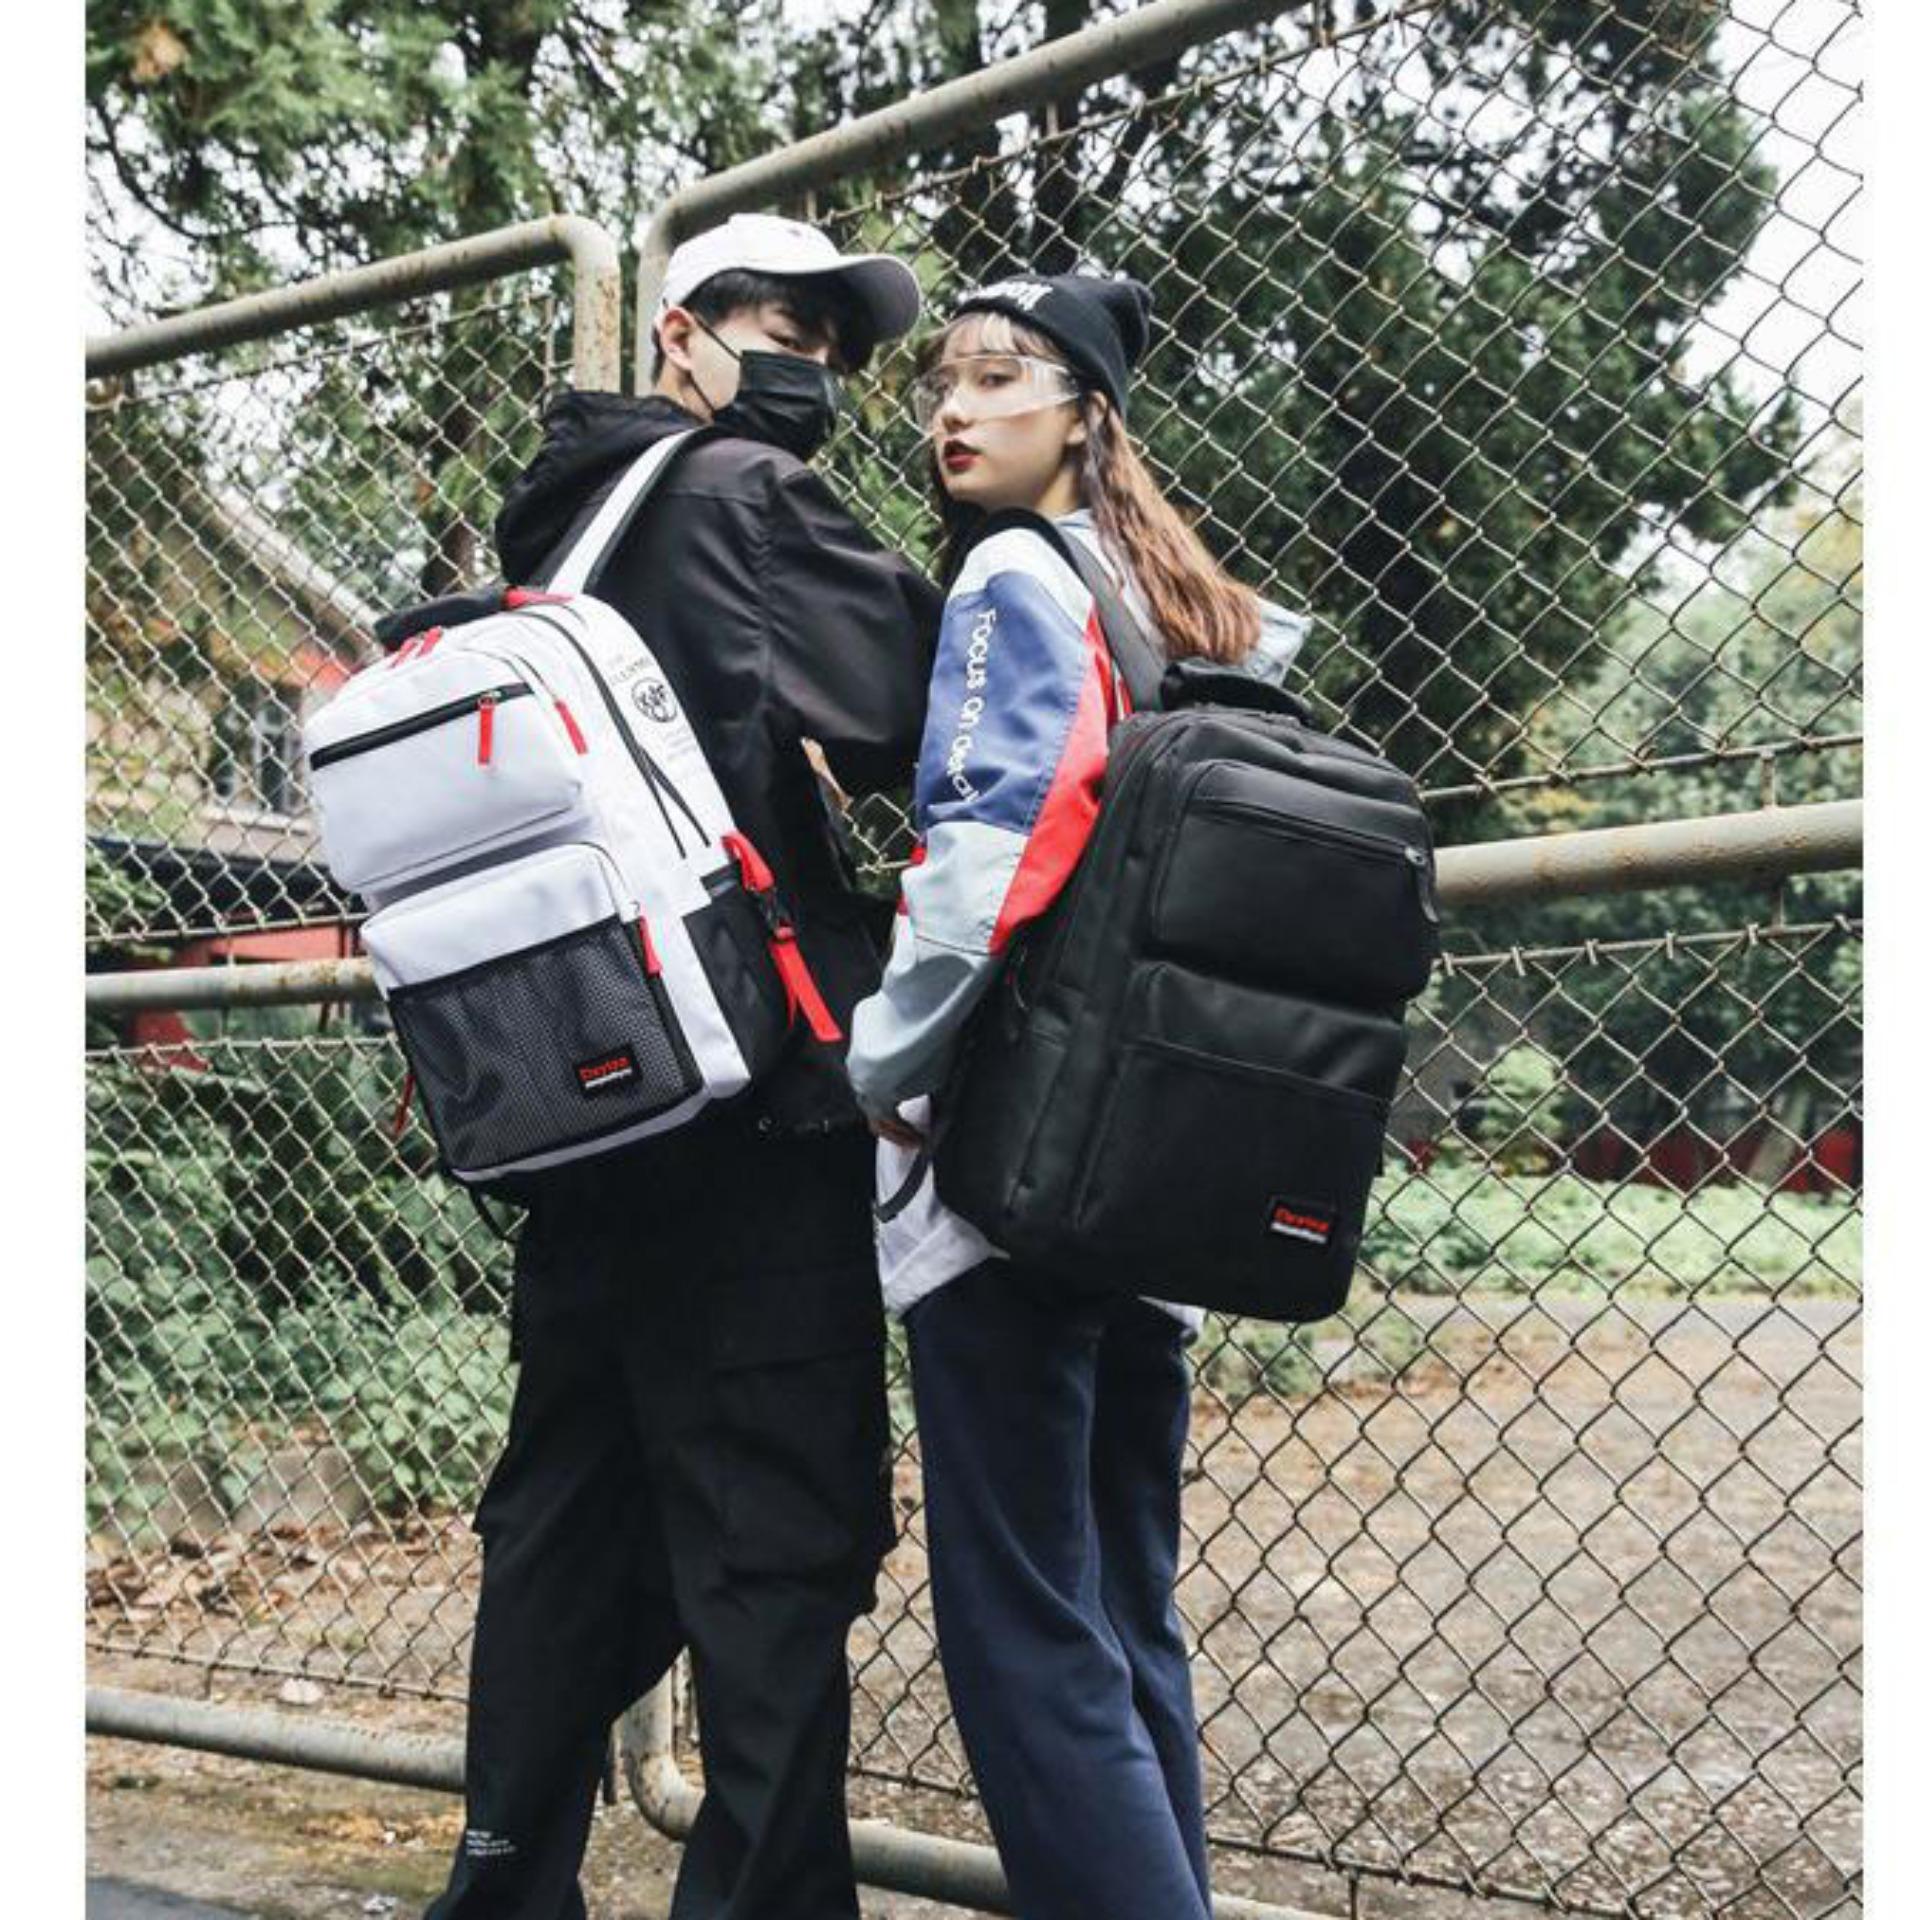 Balo nam nữ thời trang đi học hottrend 2019 có ngăn chứa laptop phong cách style HÀN QUỐC (Đen) B1